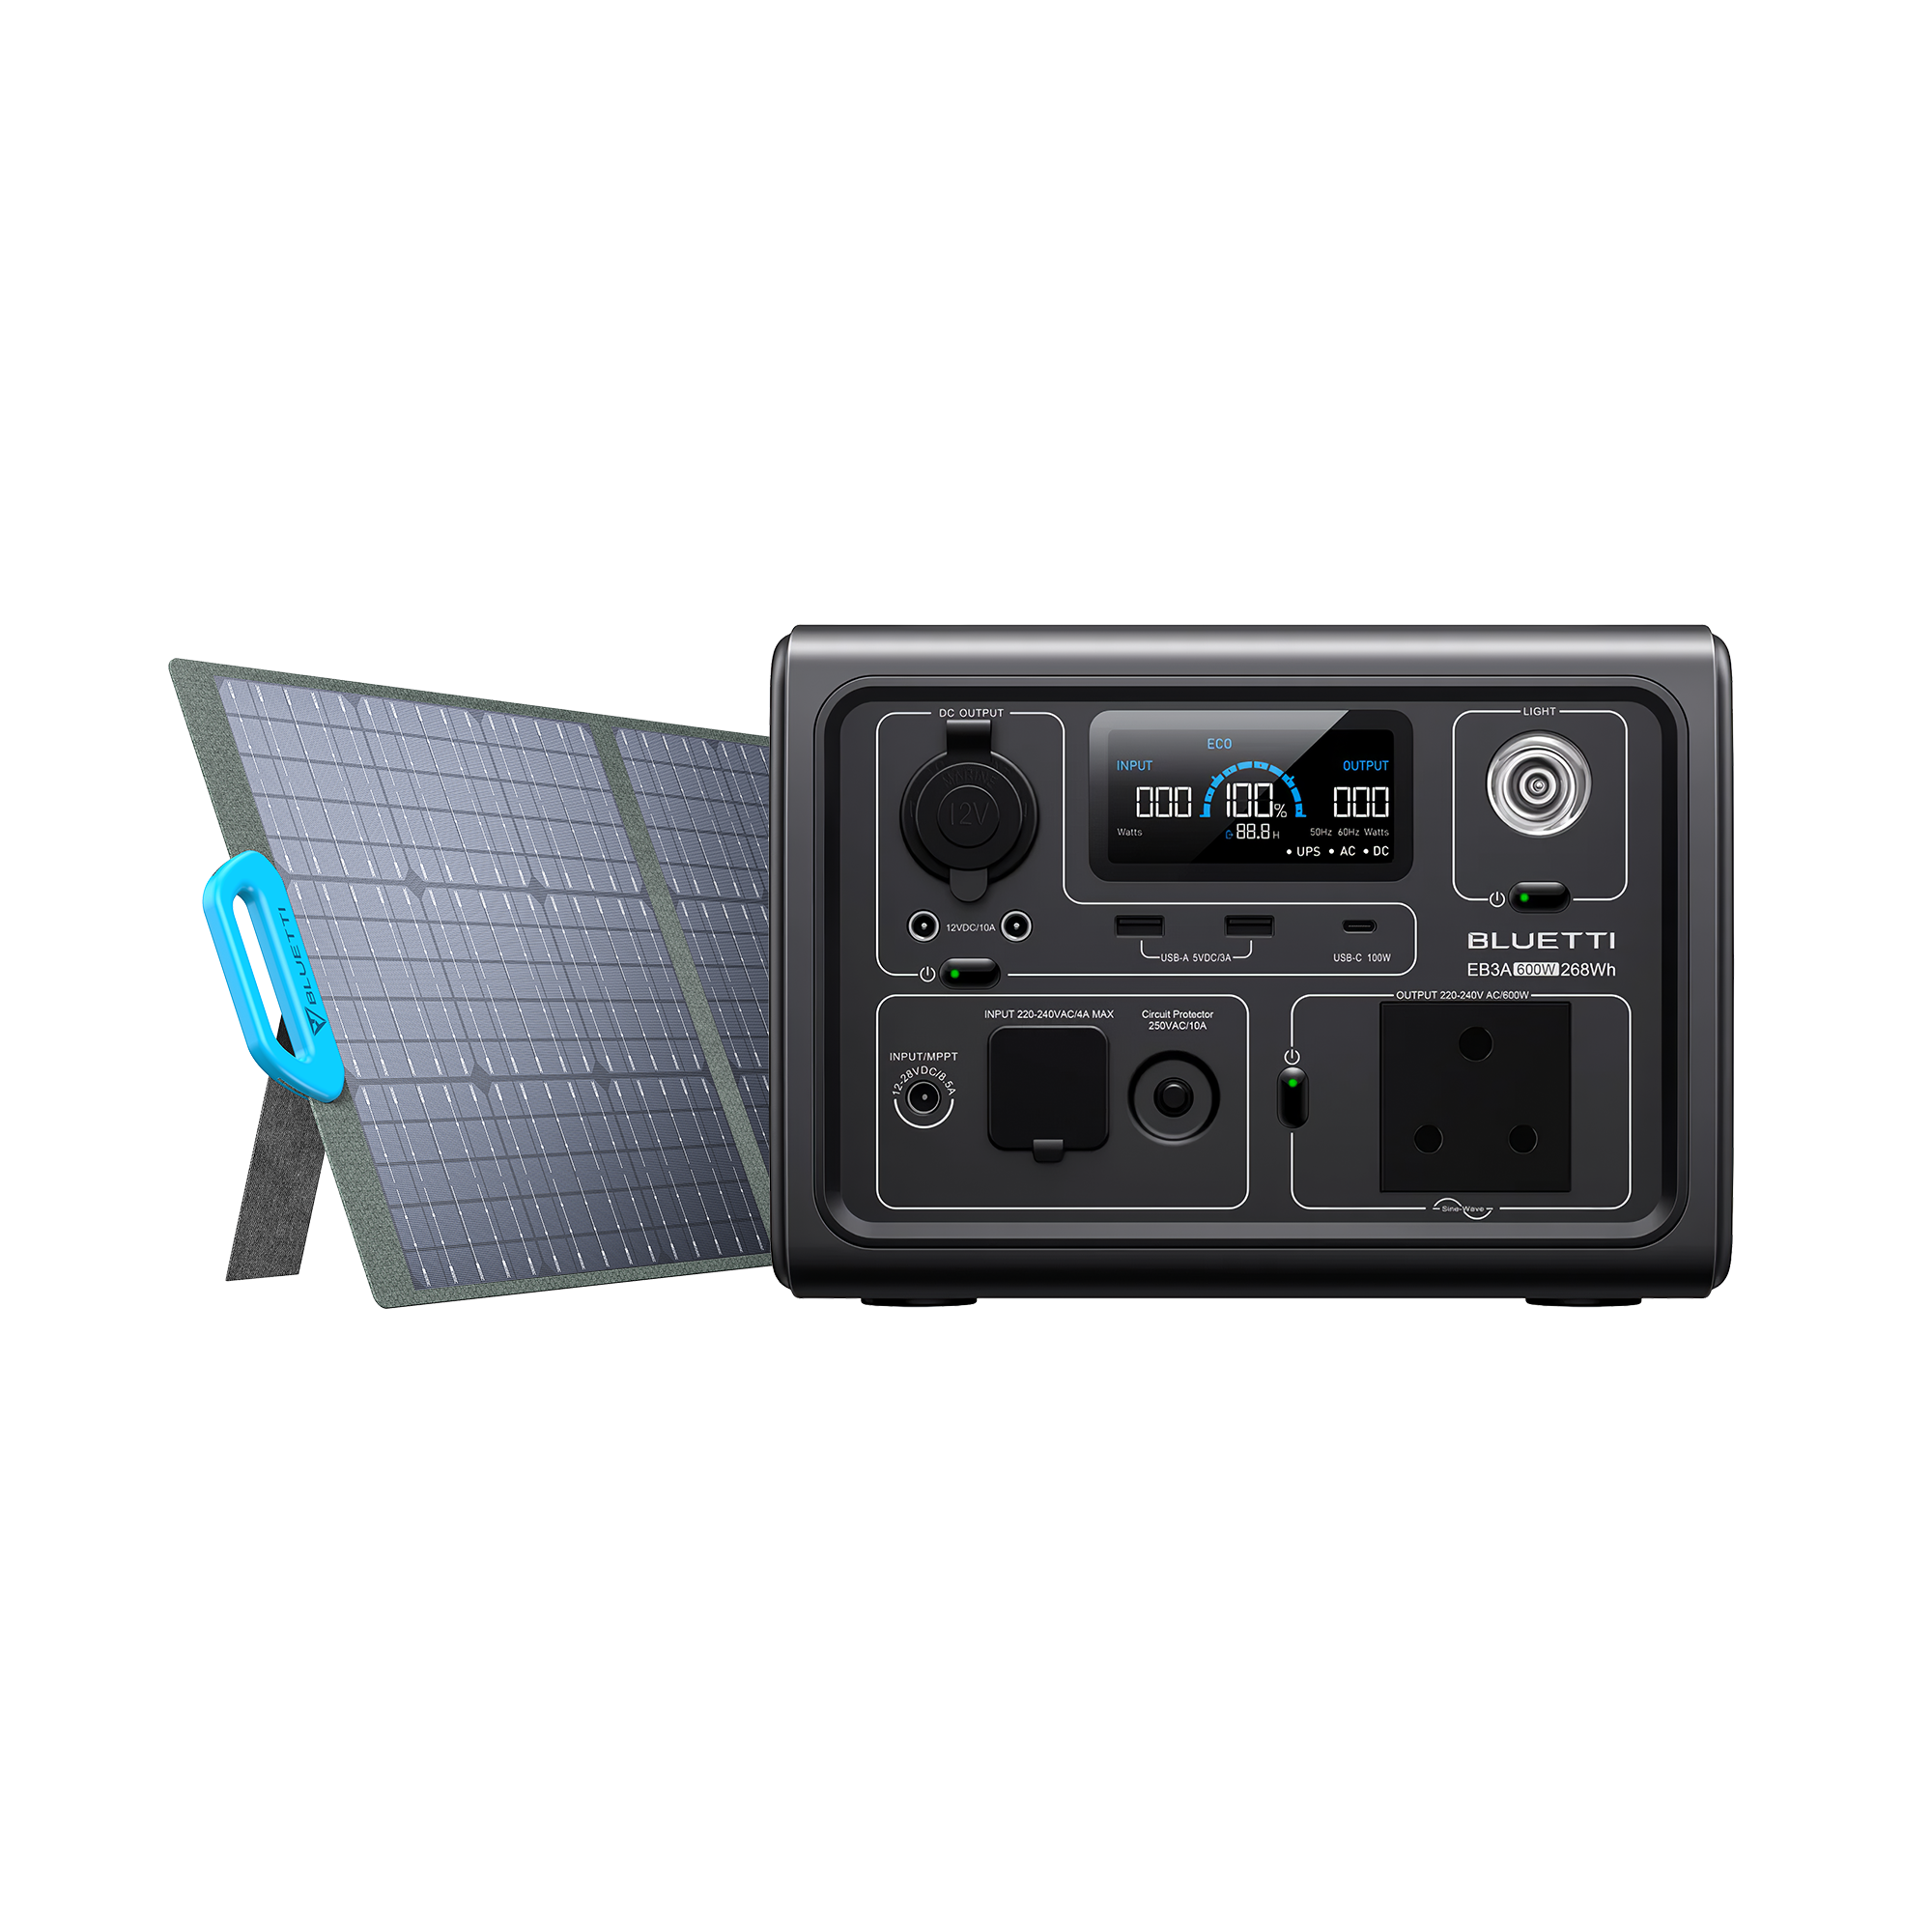 Off-grid solar kit: Bluetti EB70 solar generator + PV200 foldable solar  panel